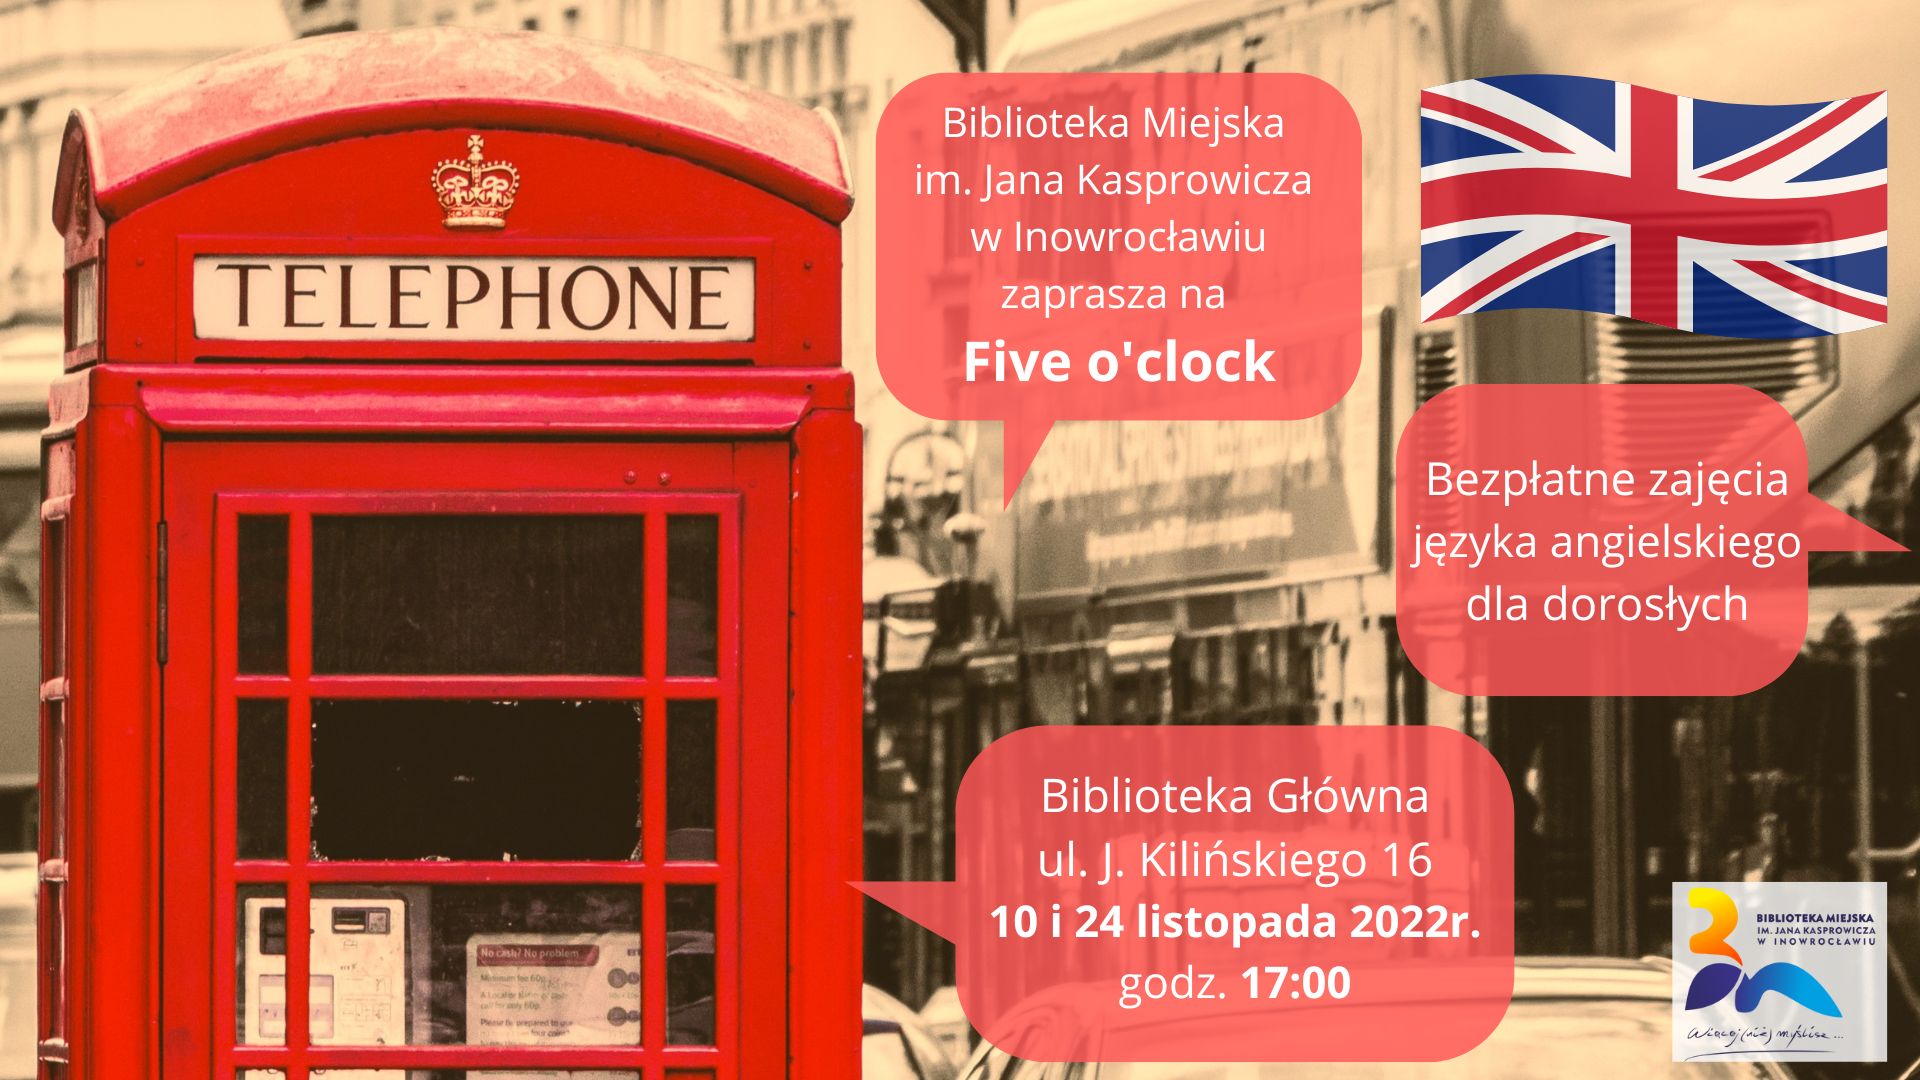 Five o’clock – bezpłatne zajęcia języka angielskiego